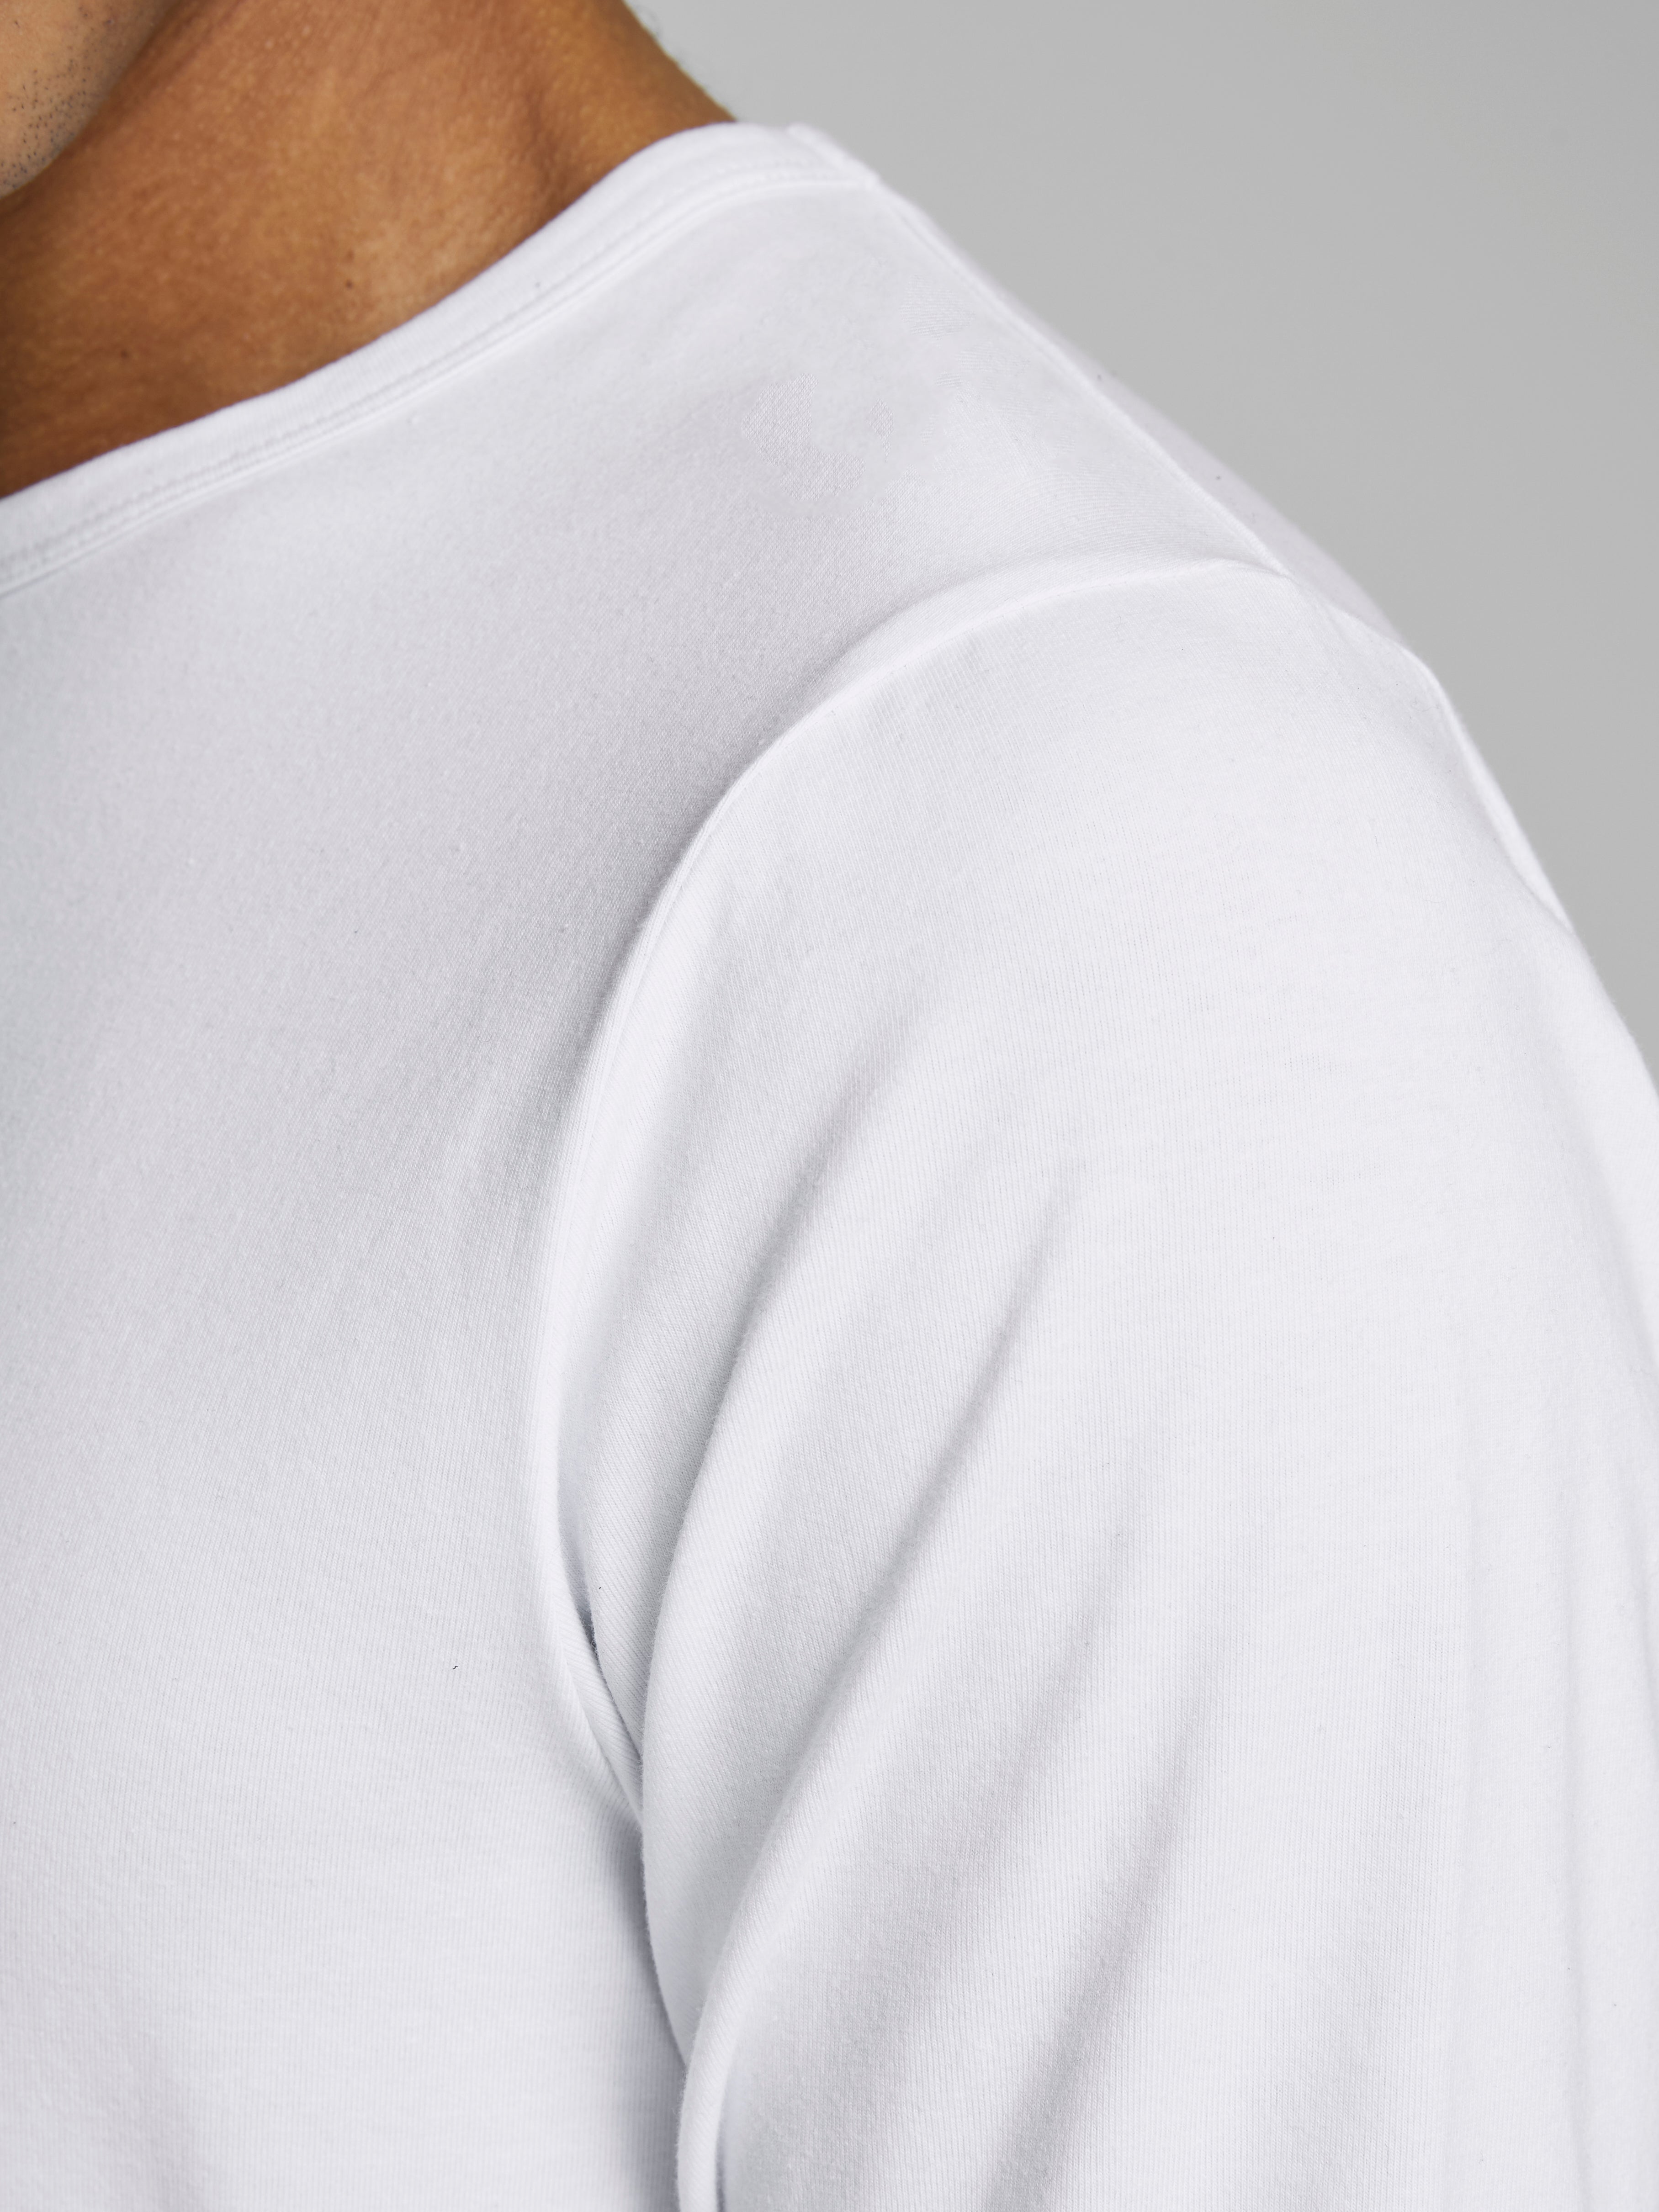 Men's White Basic O-Neck Basic Long Sleeve Tee-Shoulder View